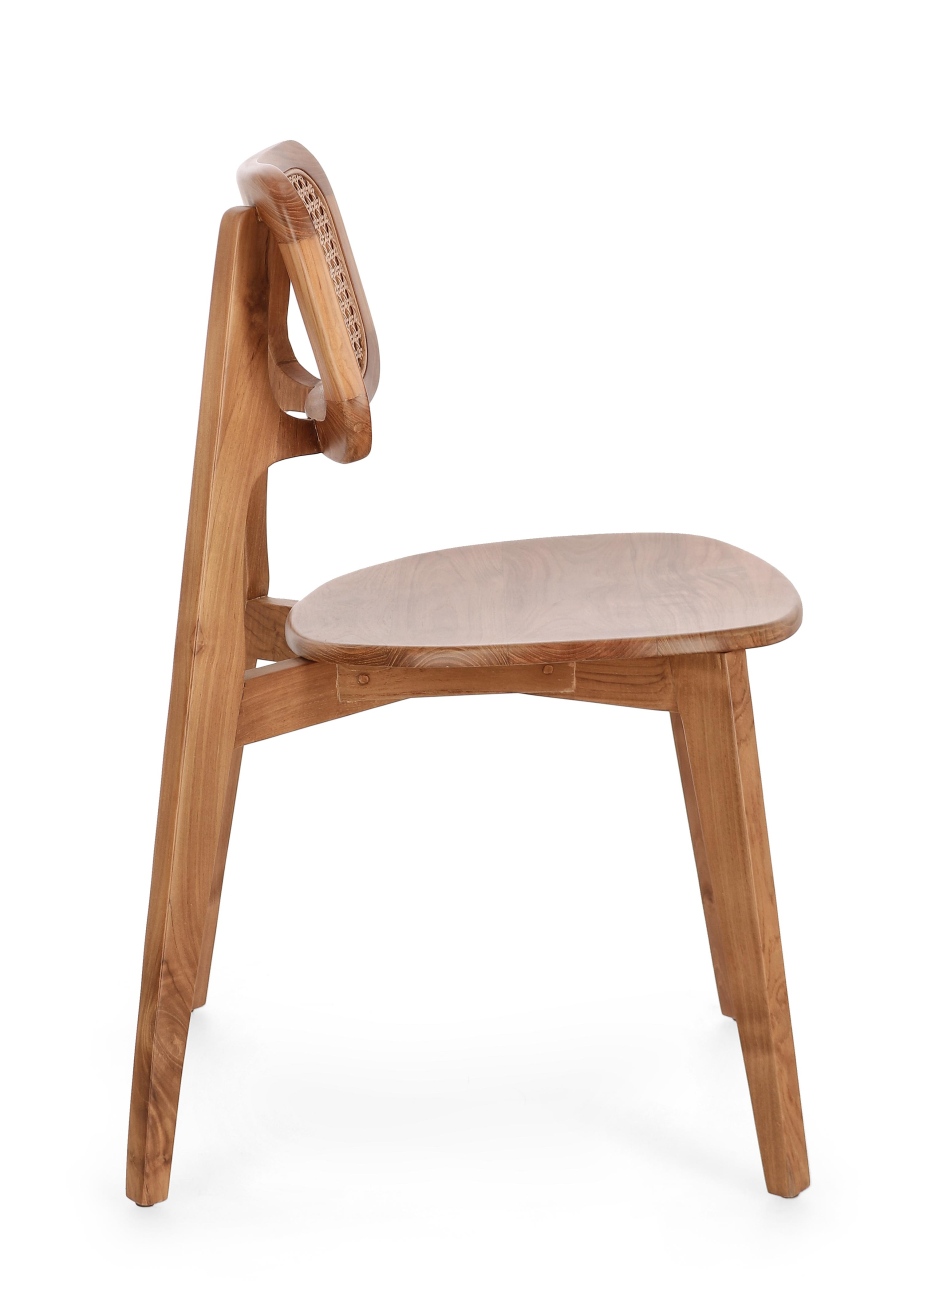 Der Esszimmerstuhl Abby überzeugt mit seinem modernen Stil. Gefertigt wurde er aus Teakholz, welcher einen natürlichen Farbton besitzt. Die Rückenlehne ist aus Rattan und hat eine natürliche Farbe. Der Stuhl besitzt eine Sitzhöhe von 46 cm.